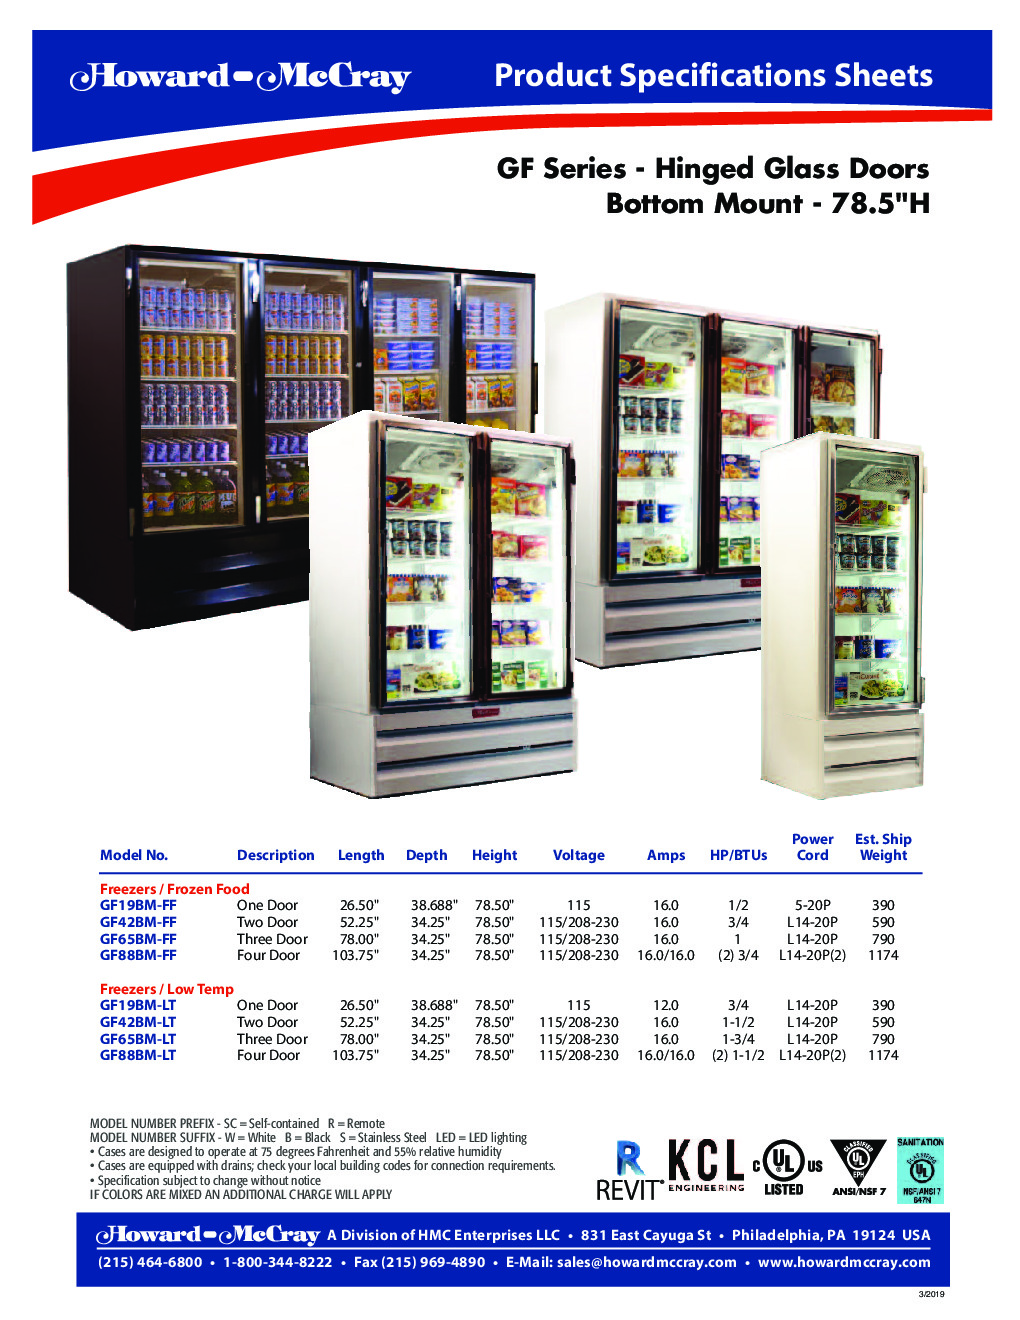 Howard-McCray GF42BM-LT Merchandiser Freezer